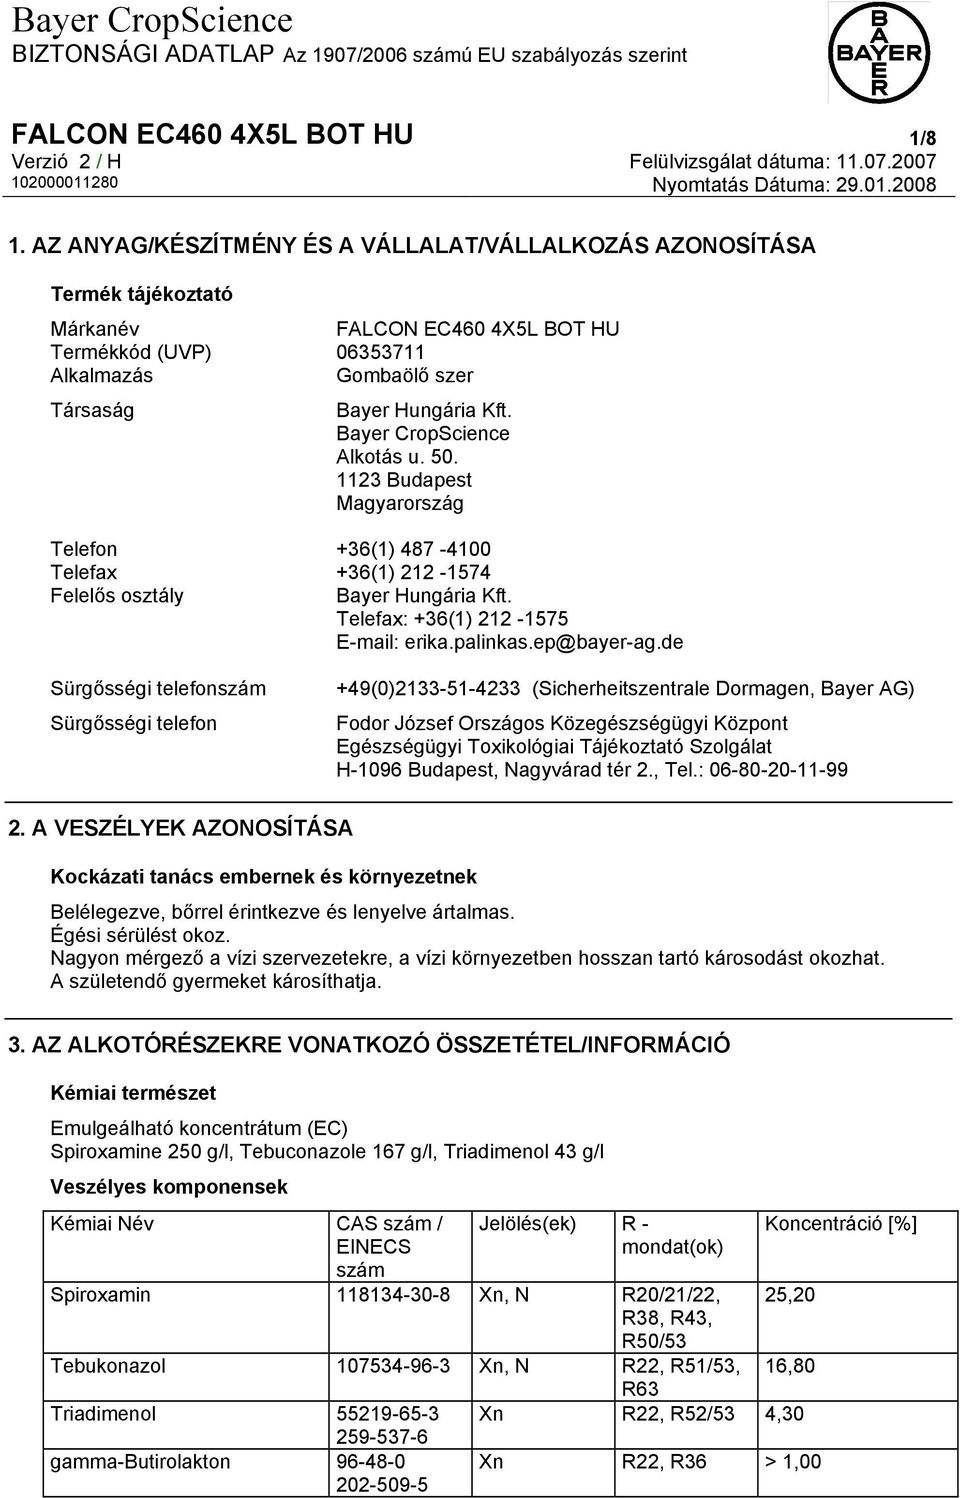 Bayer CropScience Alkotás u. 50. 1123 Budapest Magyarország Telefon +36(1) 487-4100 Telefax +36(1) 212-1574 Felelős osztály Bayer Hungária Kft. Telefax: +36(1) 212-1575 E-mail: erika.palinkas.